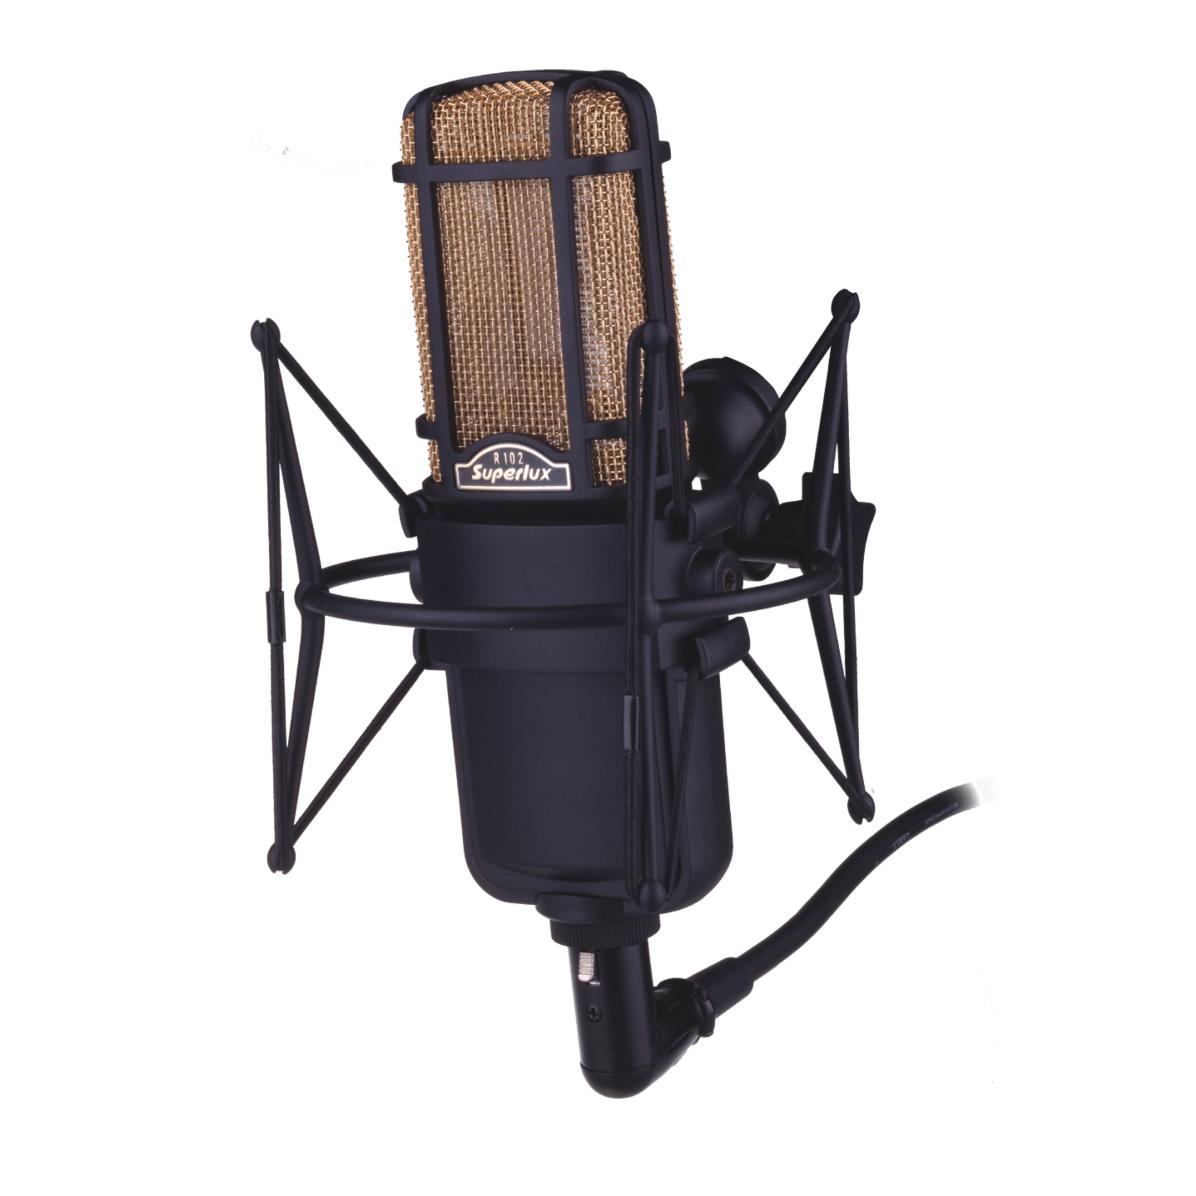 Ручные микрофоны Superlux R102 MKII инструментальные микрофоны superlux e109